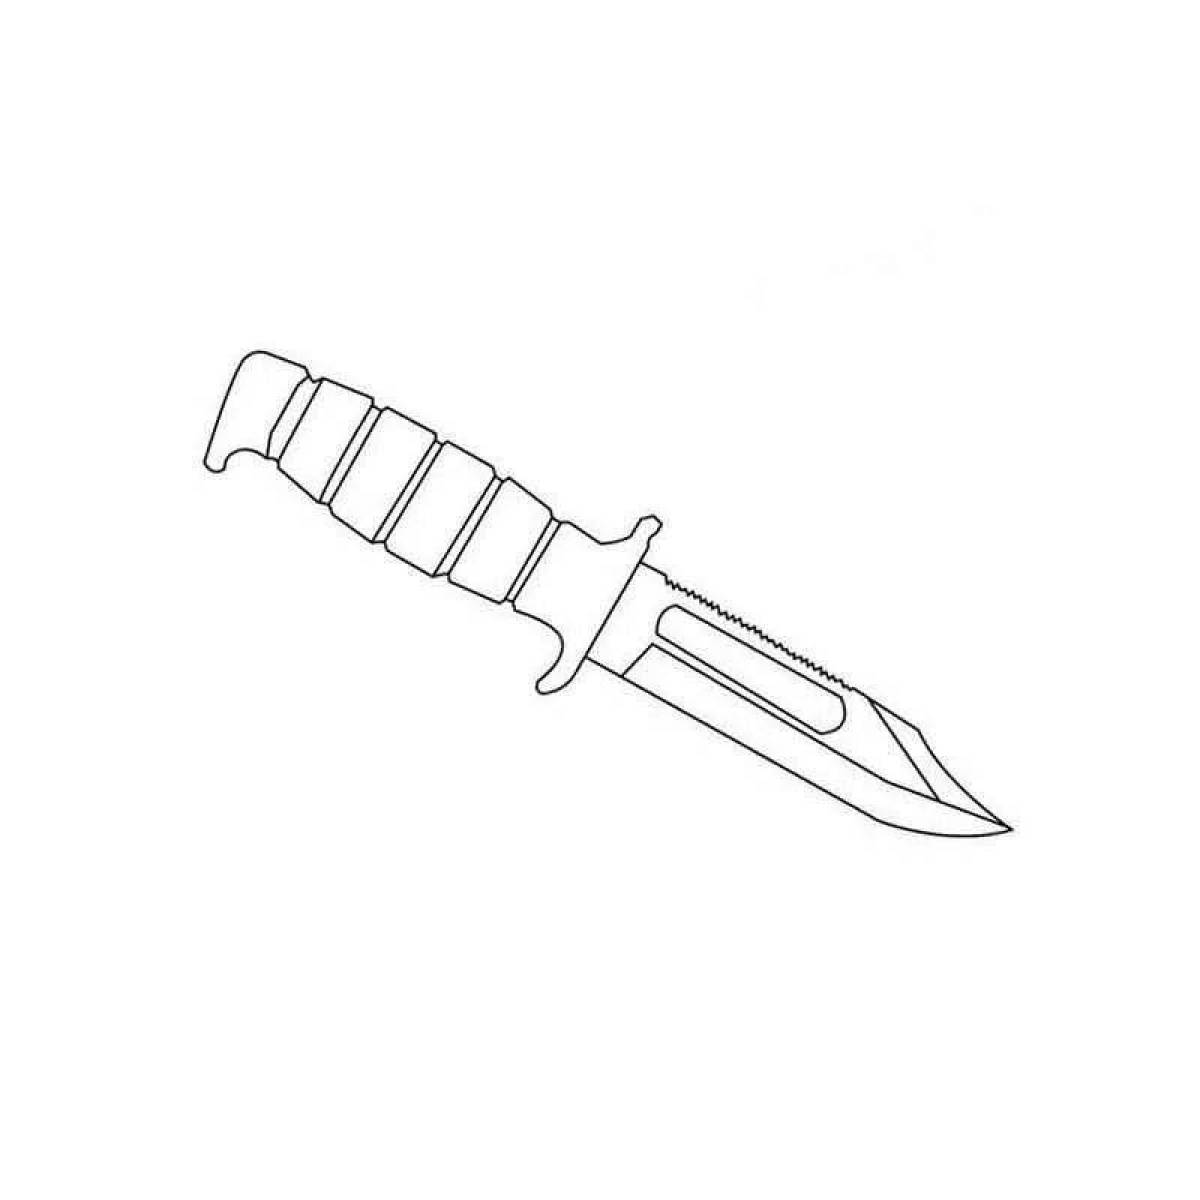 Раскраска стендов нож. M9 ножи в СТЕНДОФФ. М9 нож стандофф 2 чертеж. Черчож м9 из стандофф2. М 9 байонет нож стандофф 2.